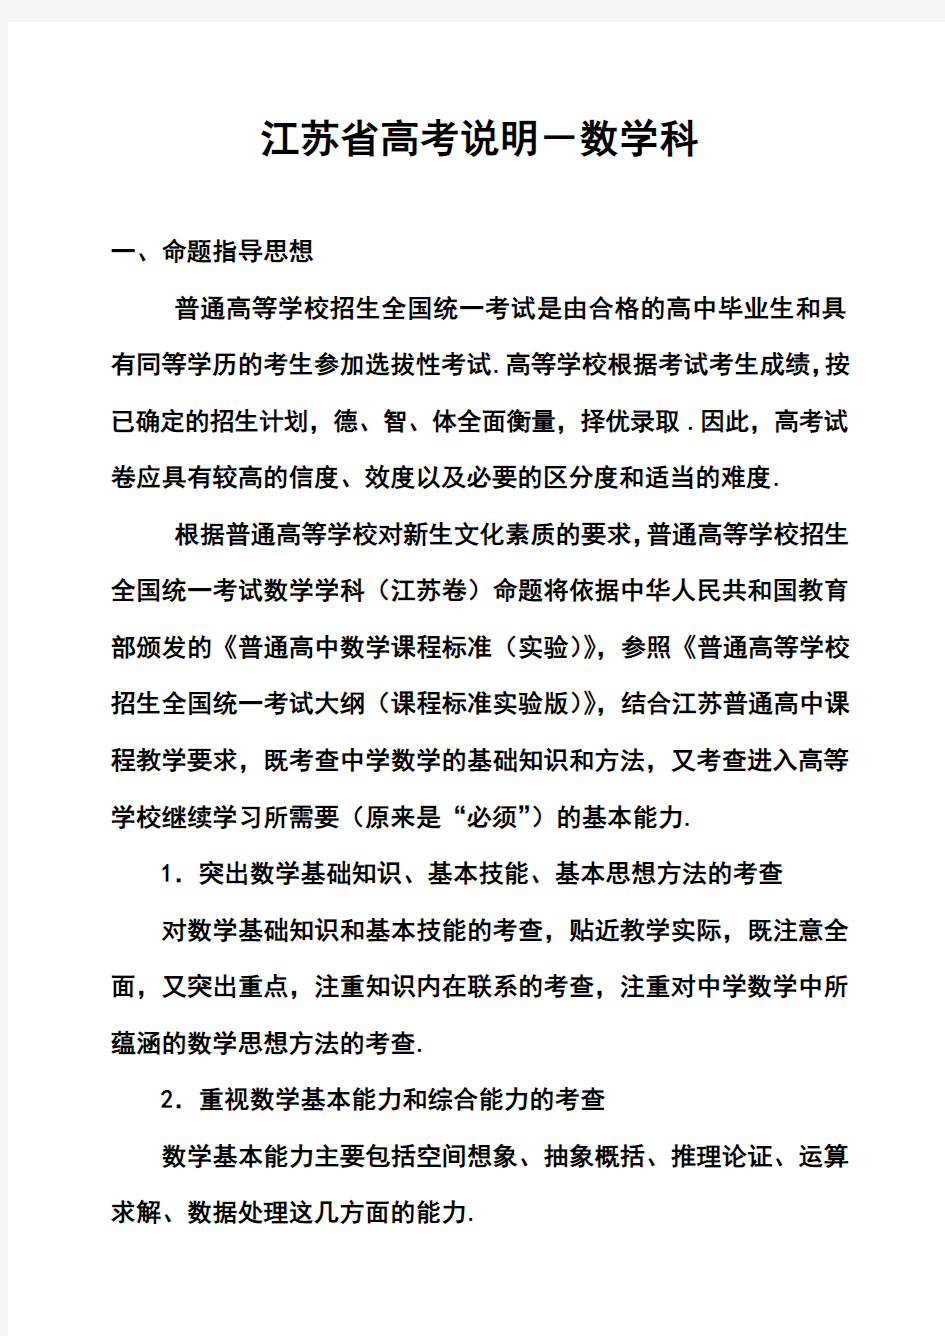 2017年江苏省高考数学科考试说明及典型题示例